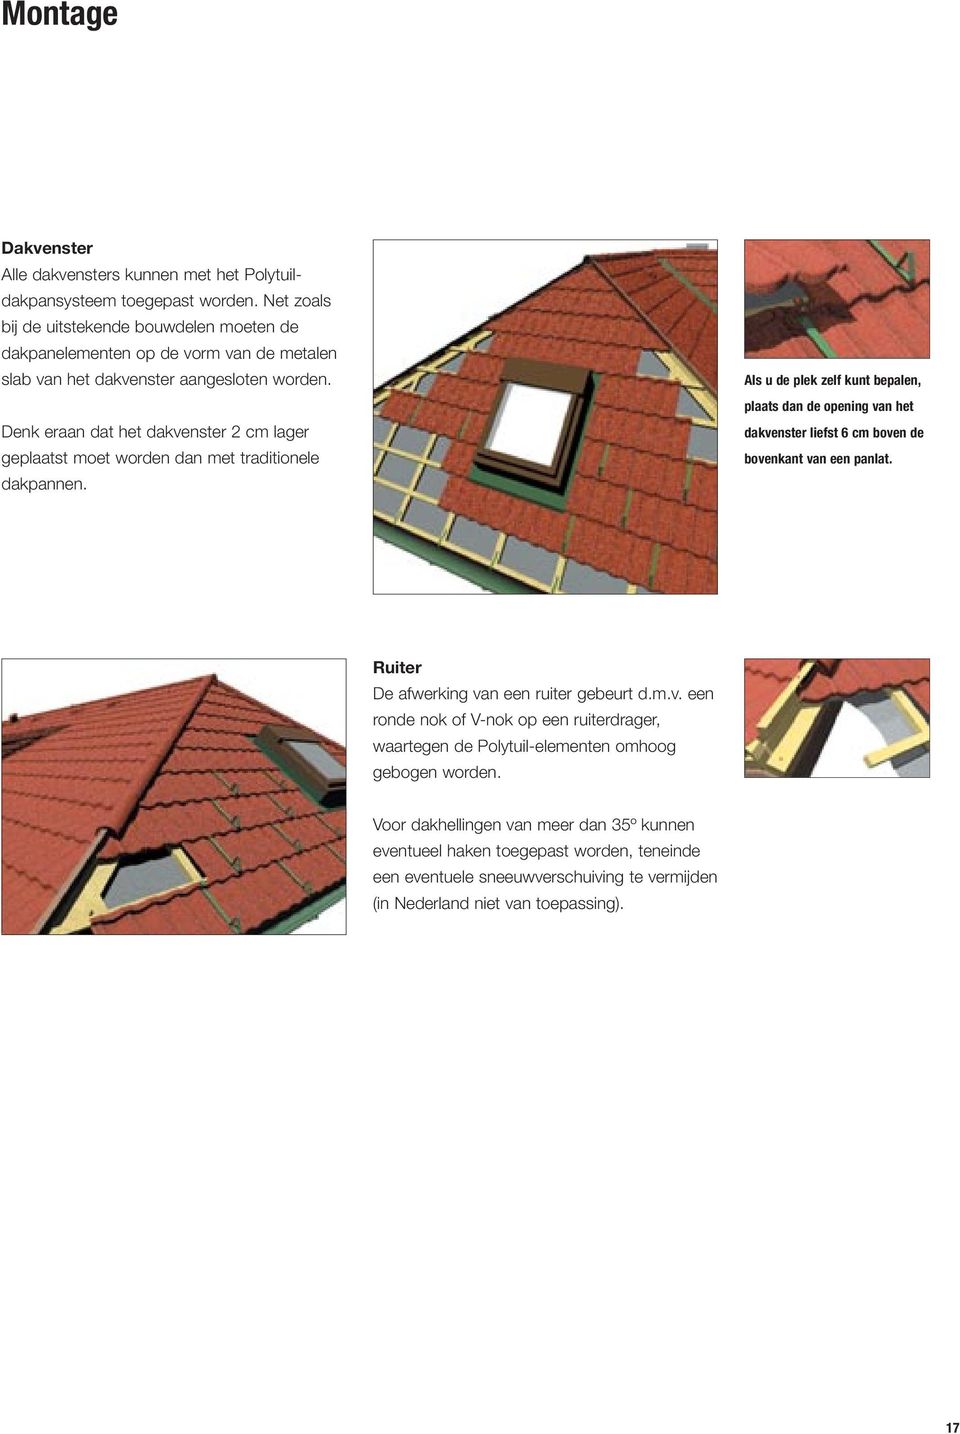 Denk eraan dat het dakvenster 2 cm lager geplaatst moet worden dan met traditionele dakpannen.